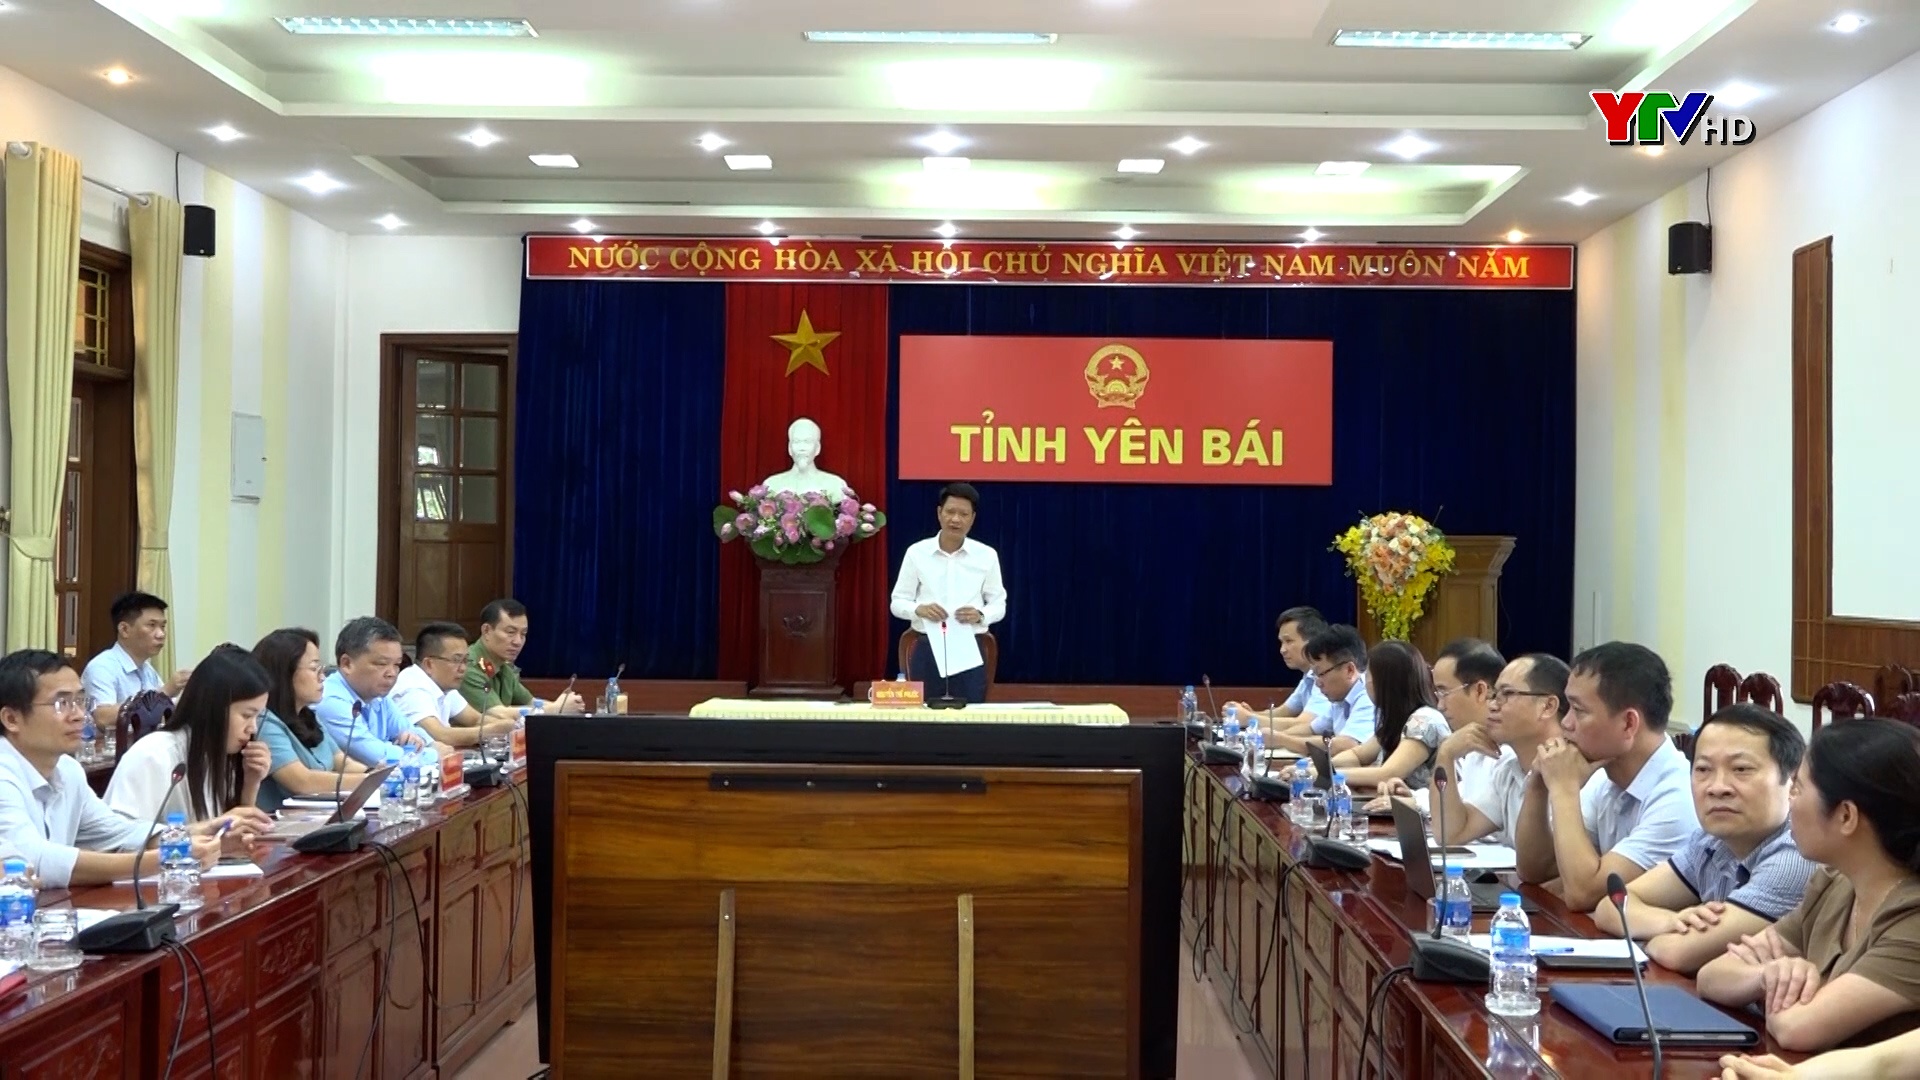 Đồng chí Phó Chủ tịch Thường trực UBND tỉnh Nguyễn Thế Phước phát biểu tham luận tại Hội nghị trực tuyến toàn quốc chuyên đề “Thúc đẩy số hóa ngành nông nghiệp”